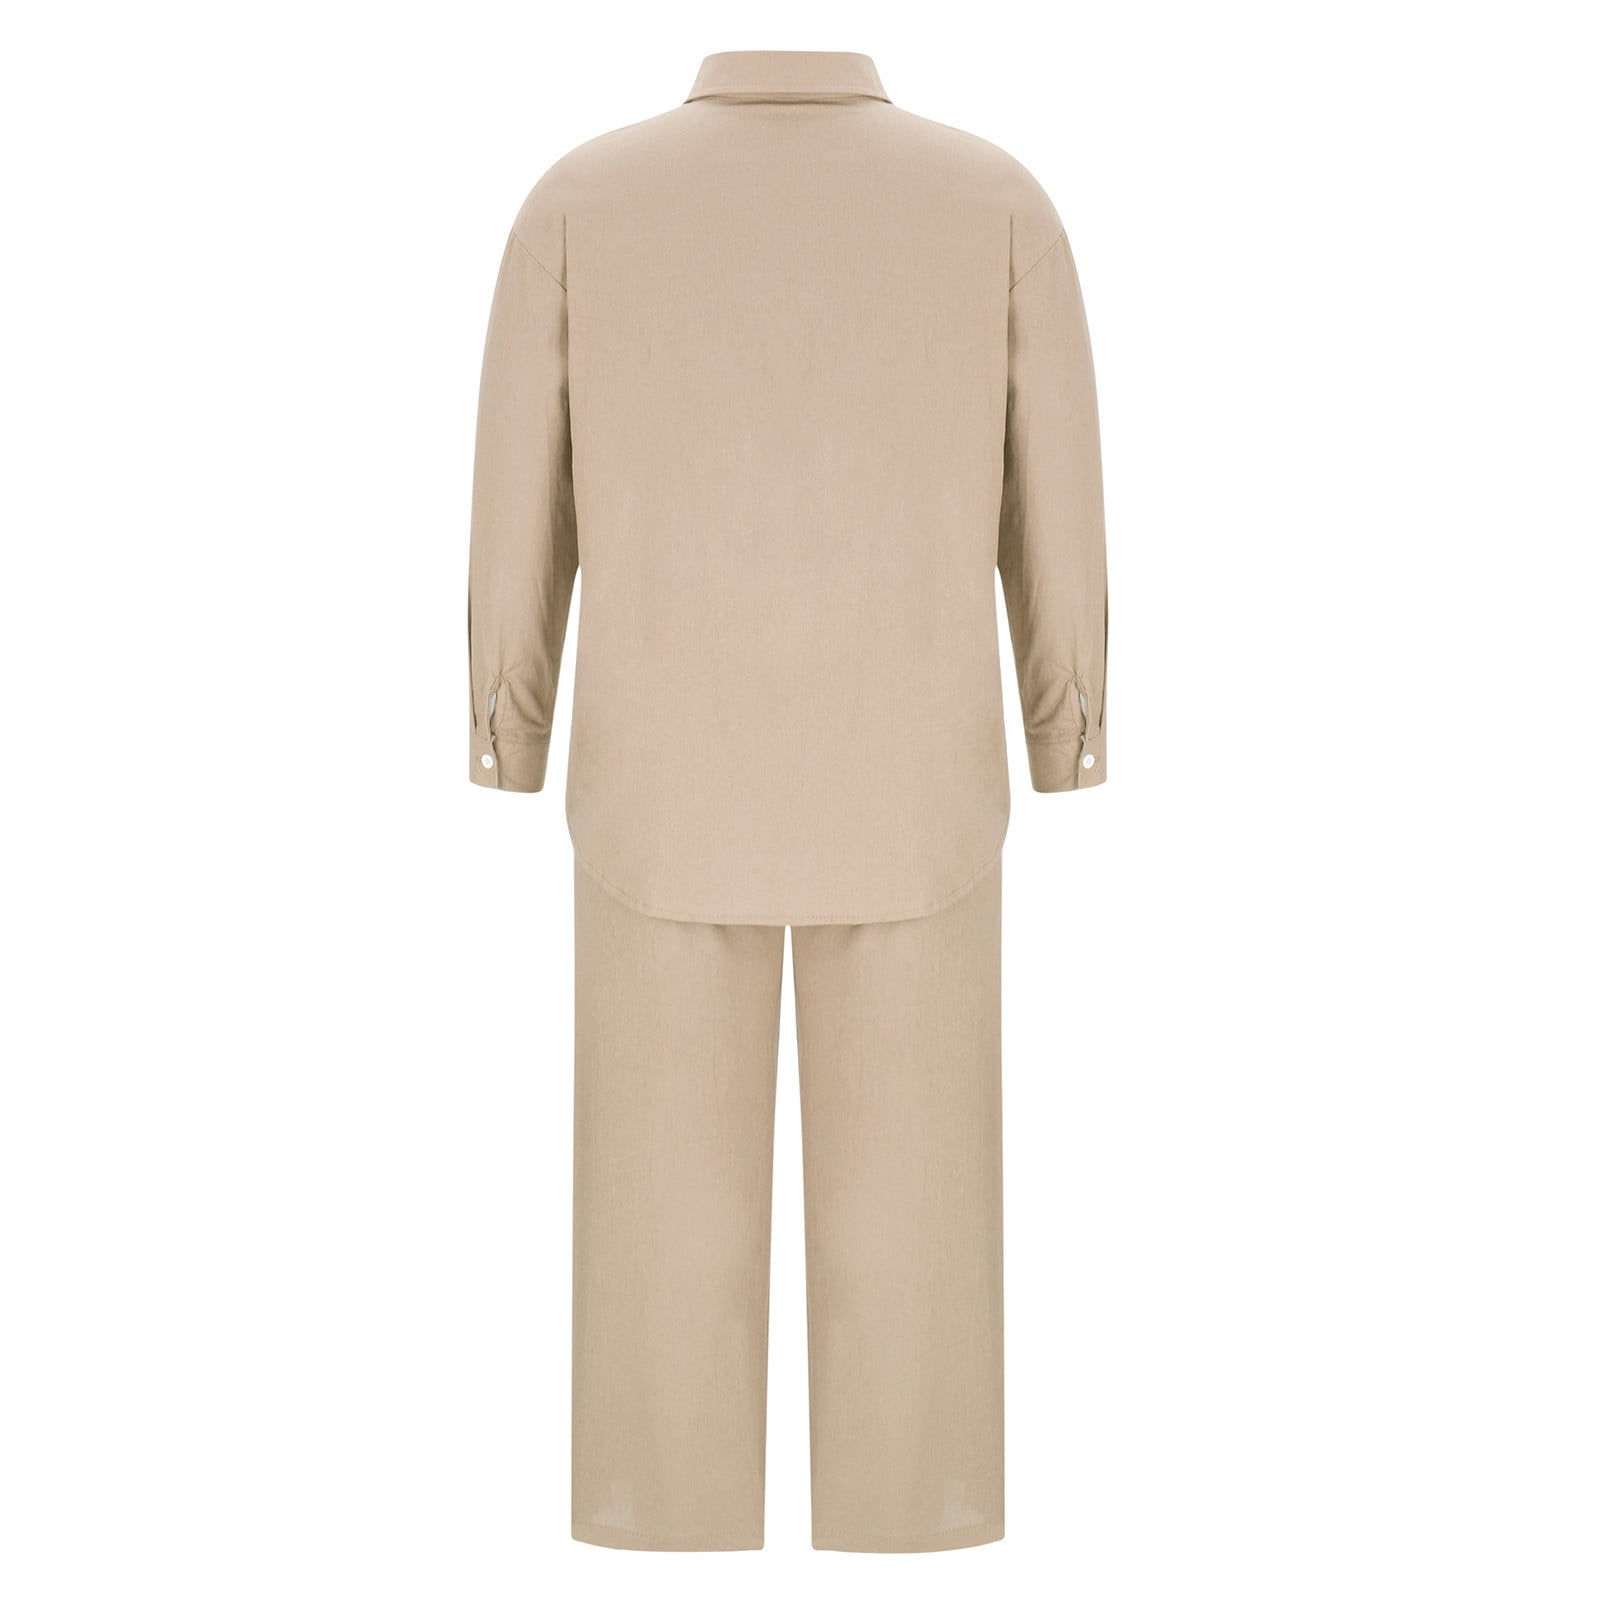 Cathalem Women Cotton Linen Suit Fashion Comfortable Vest And Long Pants  Solid Color Top Set Suit Beige XL